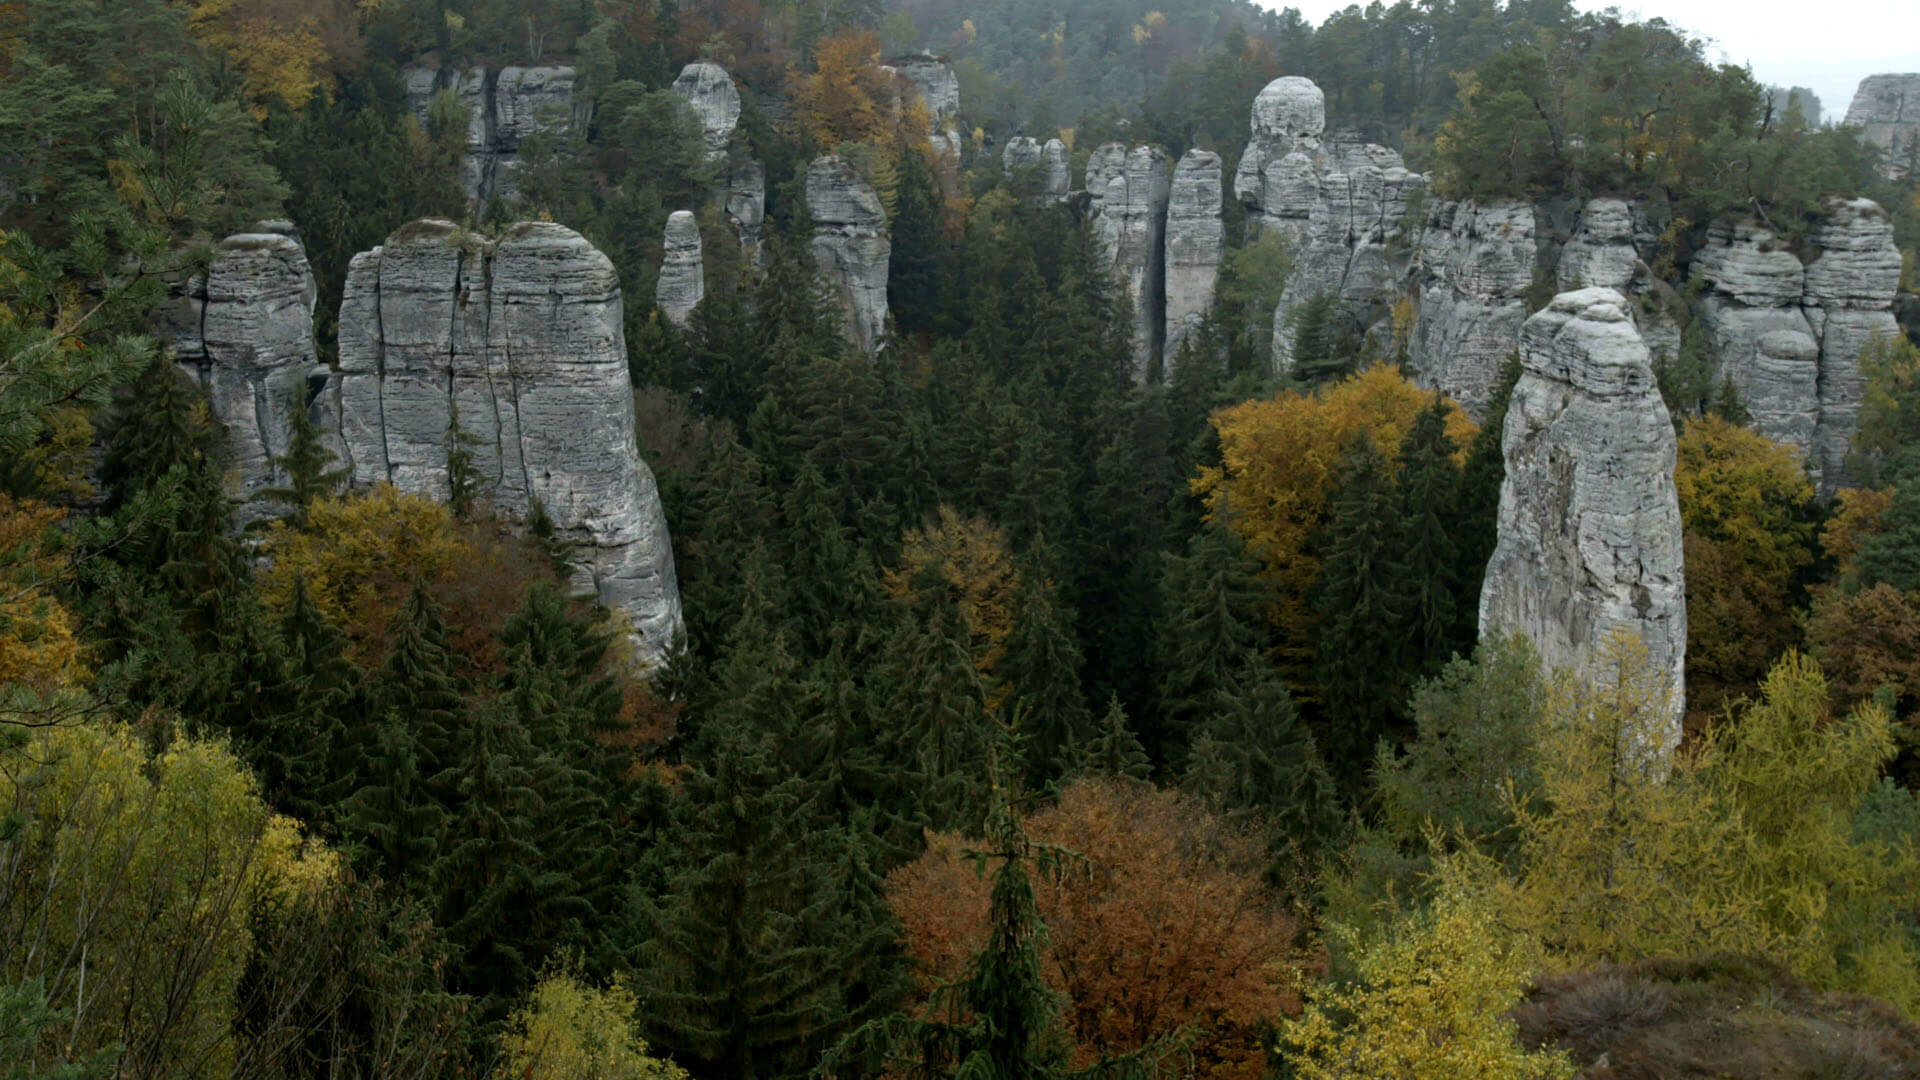 Czechia (Czech Republic): Hruboskalsko, Rock towns and formations, Natural landscape. 1920x1080 Full HD Wallpaper.